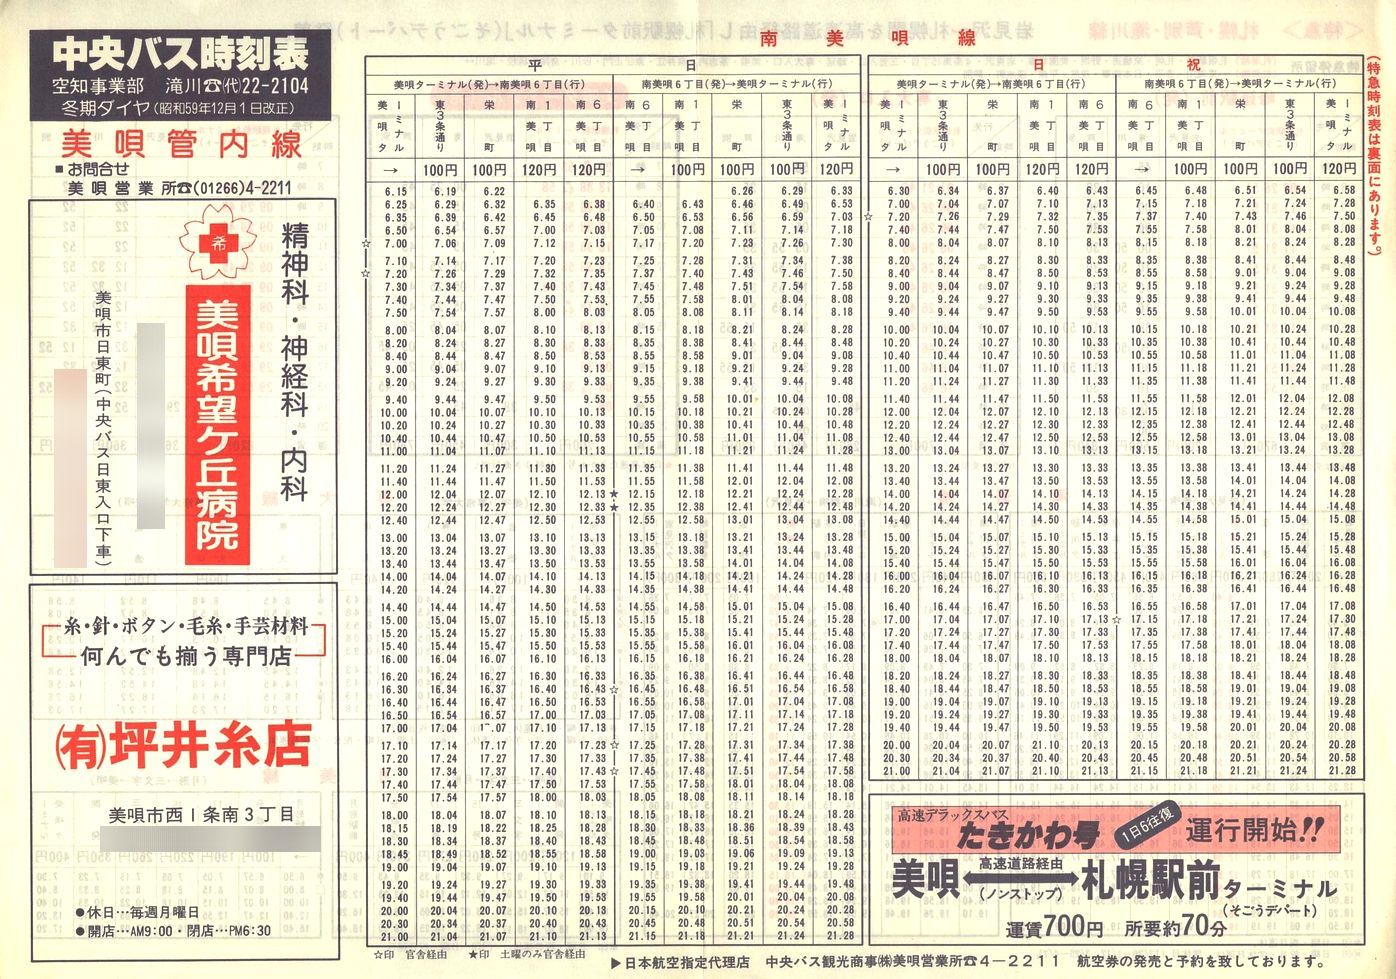 1984-12-01改正_北海道中央バス(空知)_美唄管内線時刻表表面